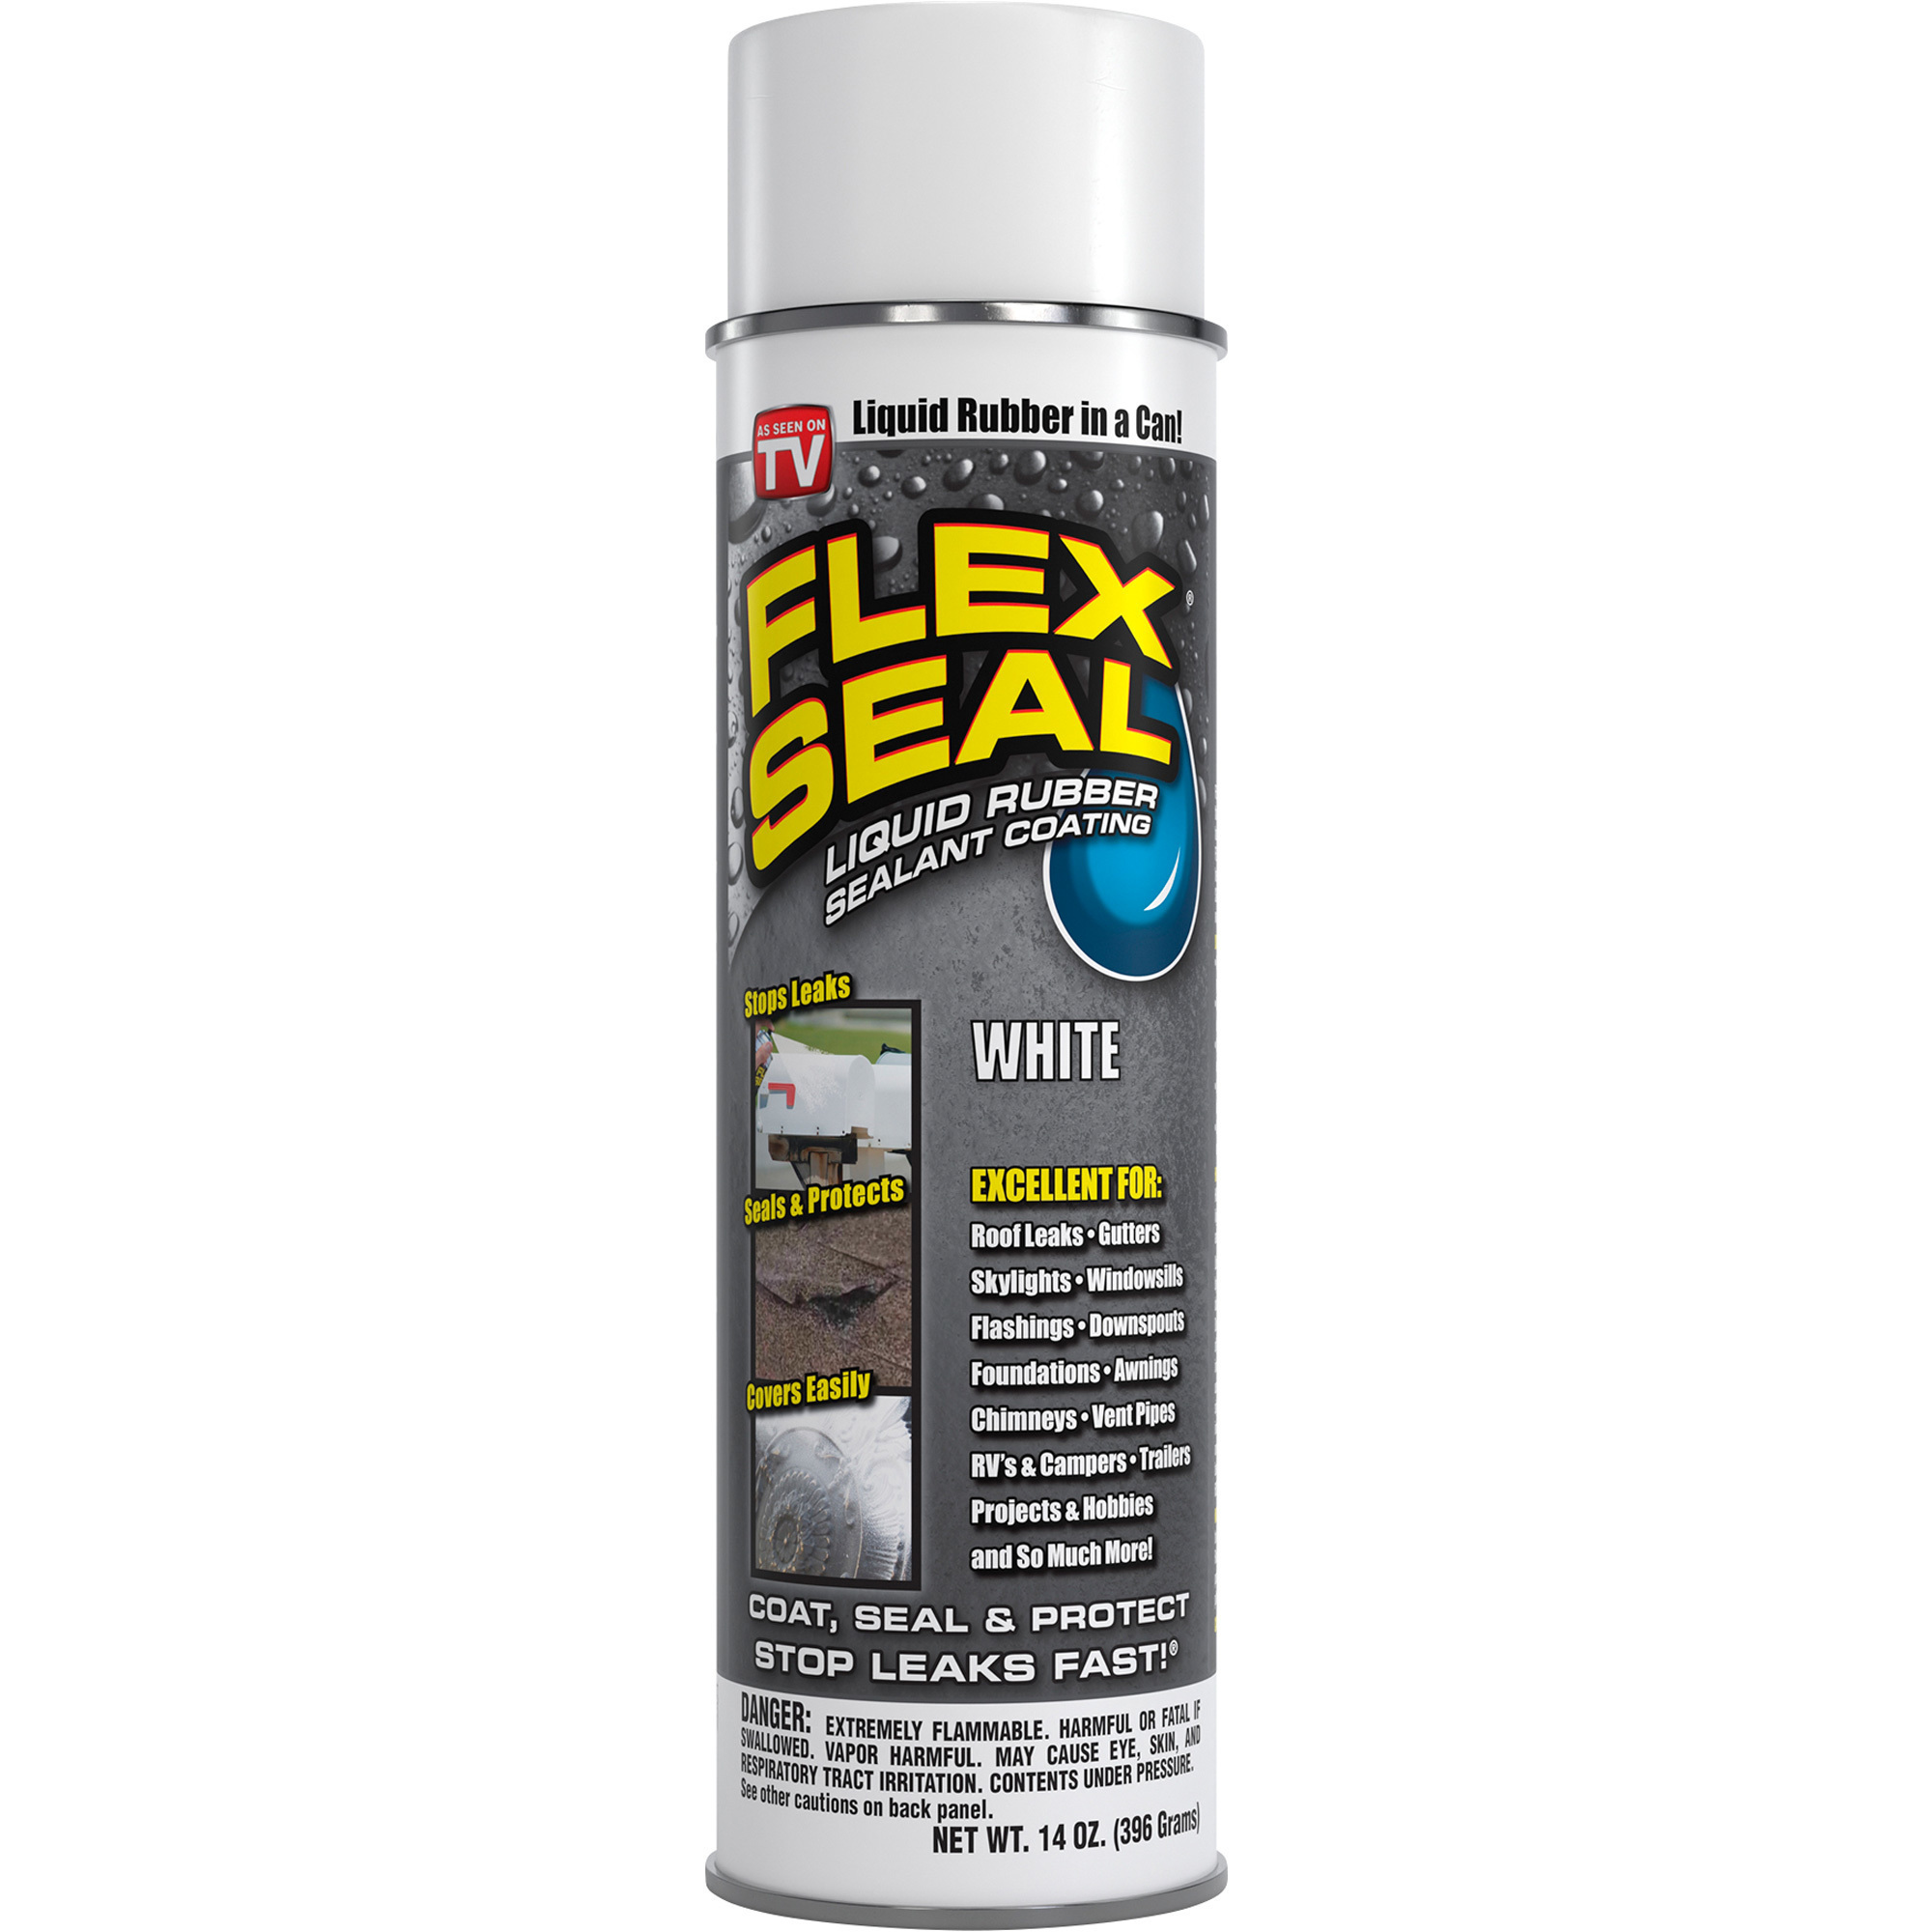 Flex Seal Liquid Rubber Sealant Coating â White, 14-Oz. Aerosol